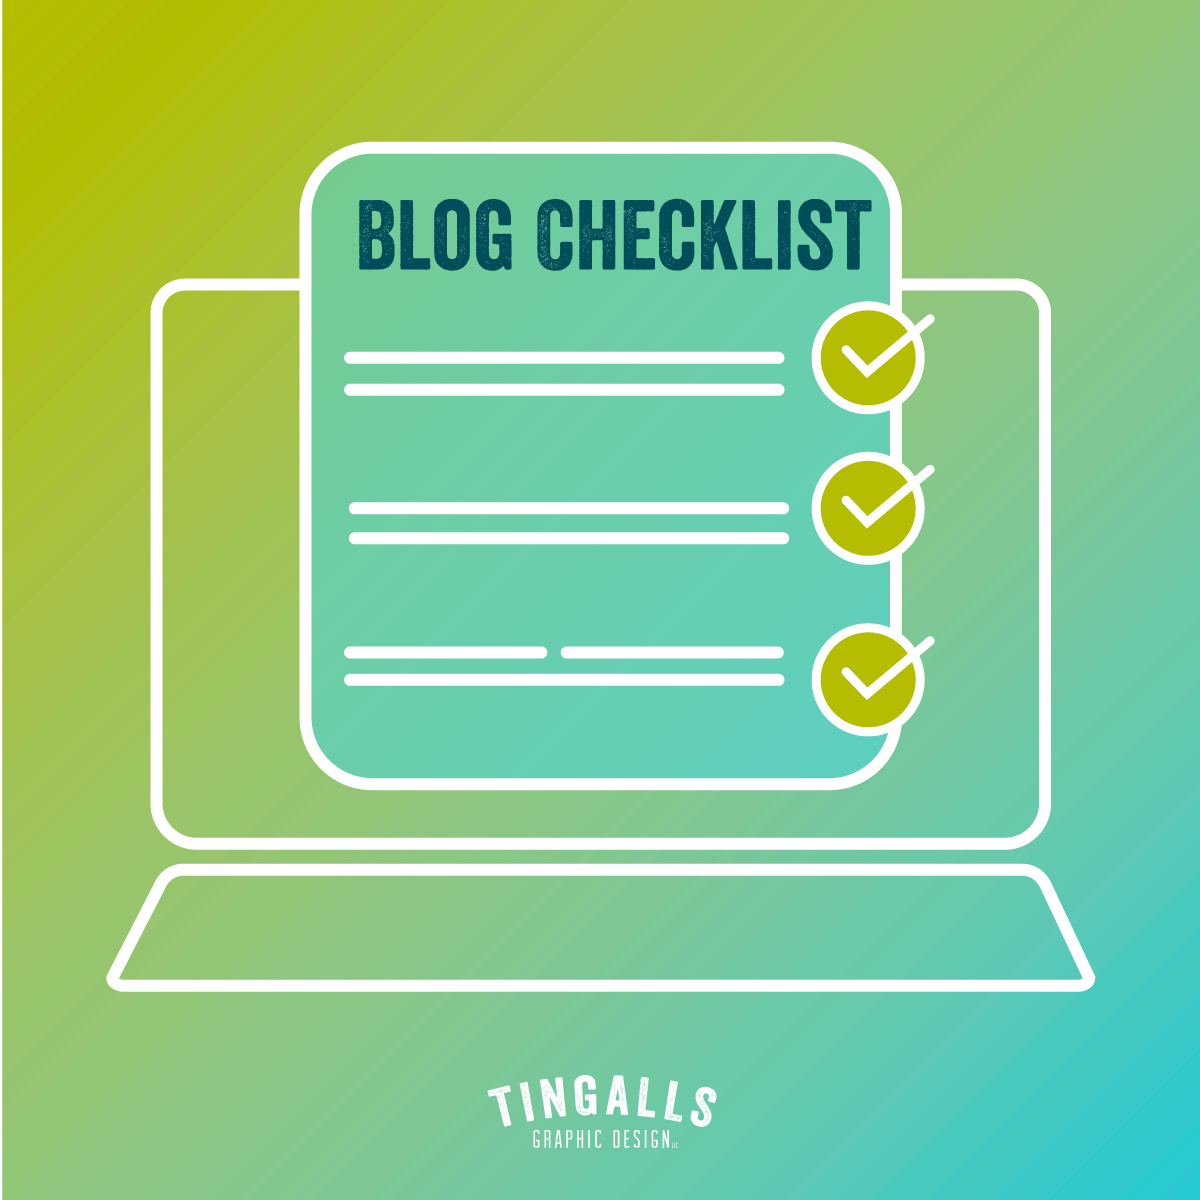 Blog checklist illustration